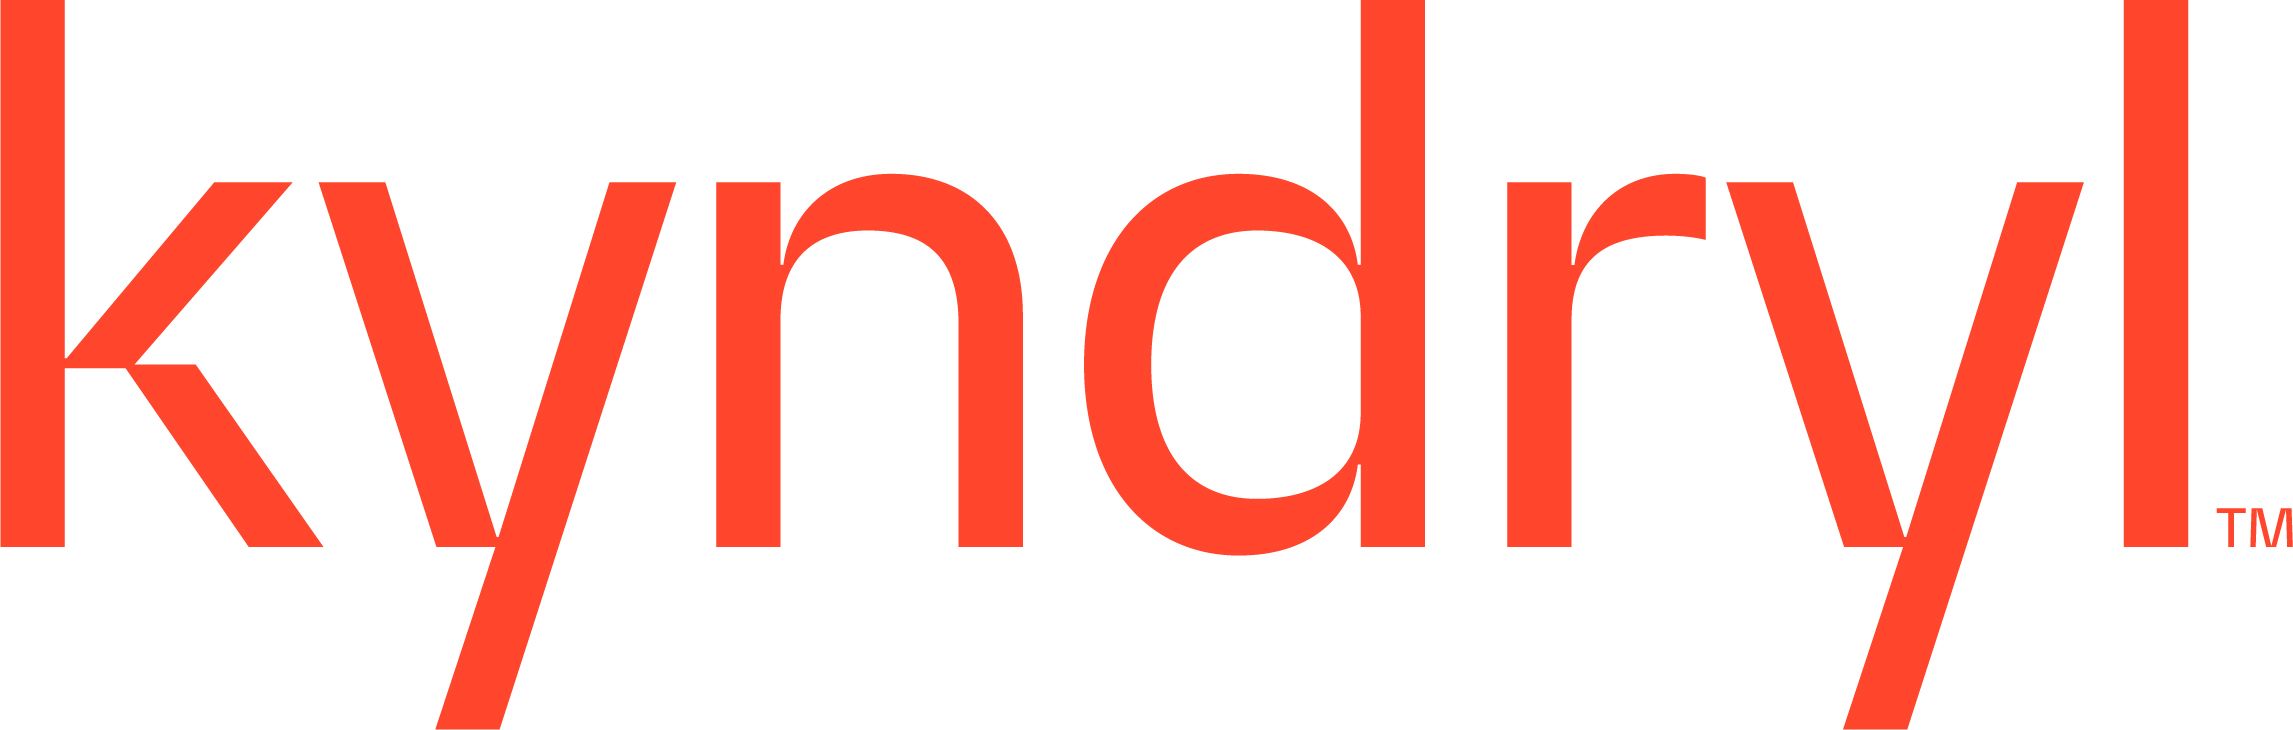 Kendryl logo